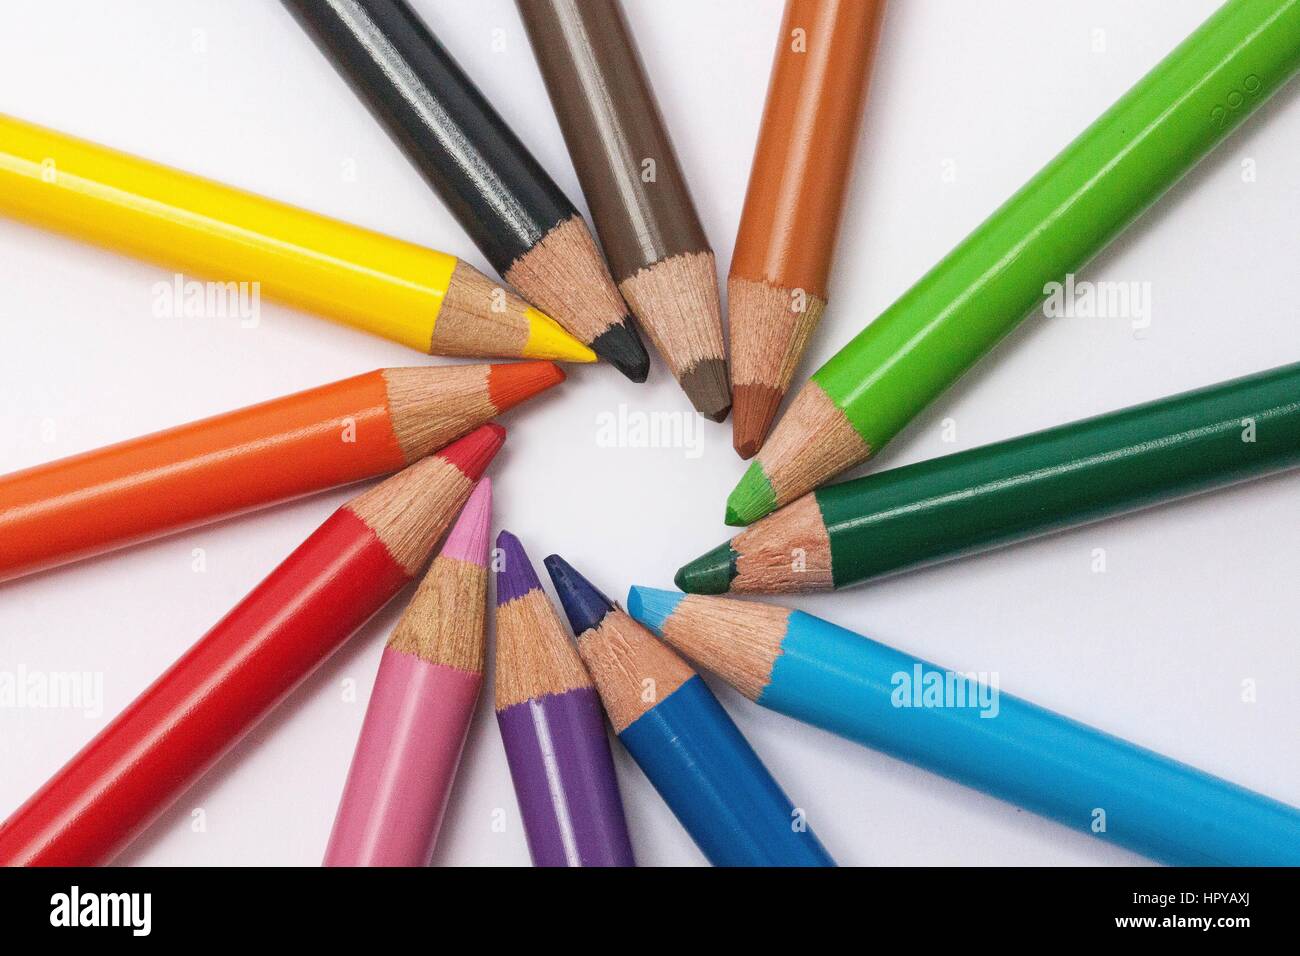 Une bonne image de crayons de couleur qui donne une belle image de fond de vos peintures ou pour tout travail de photo.et bonne photo encore avec des etc. Banque D'Images